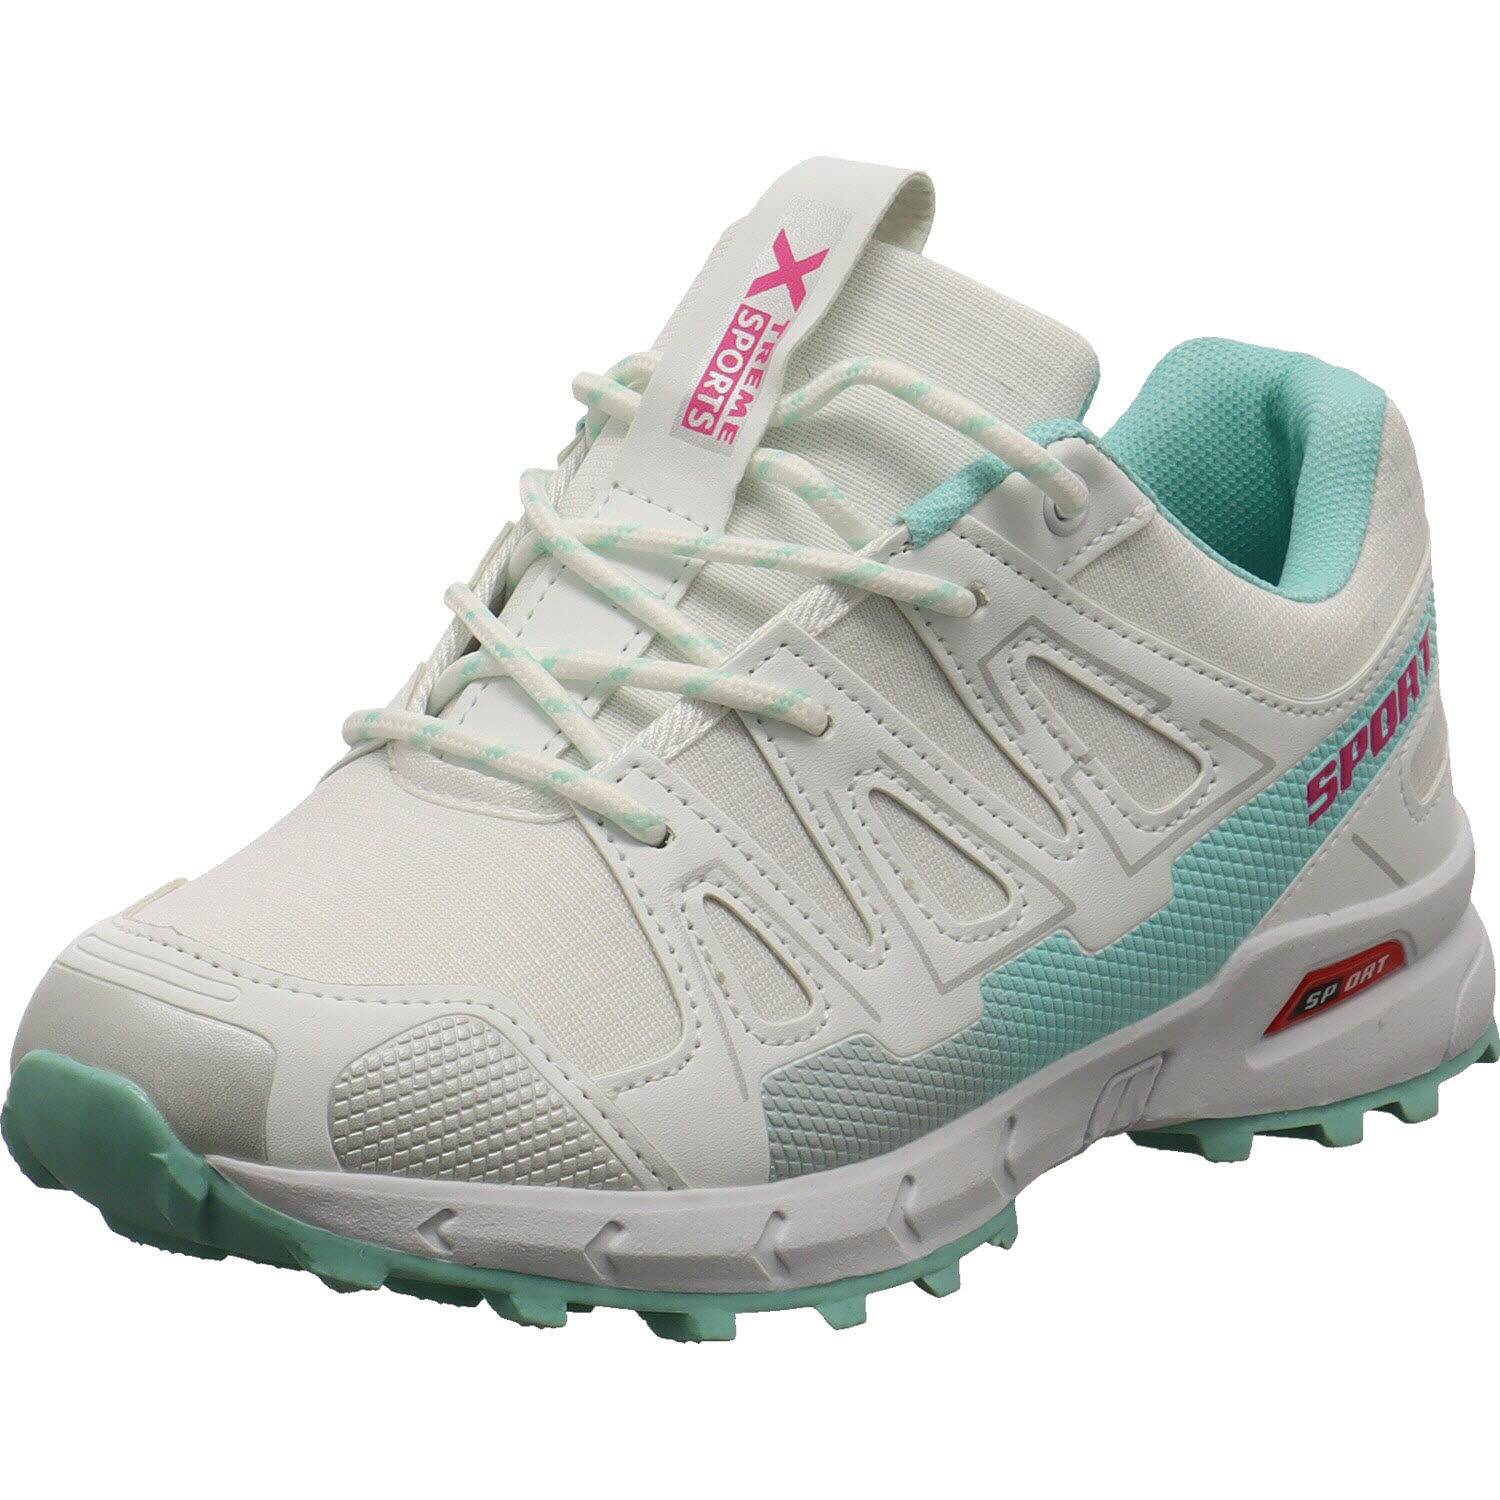 Xtreme Sports Trekking Schuh Weiß/grün für Damen